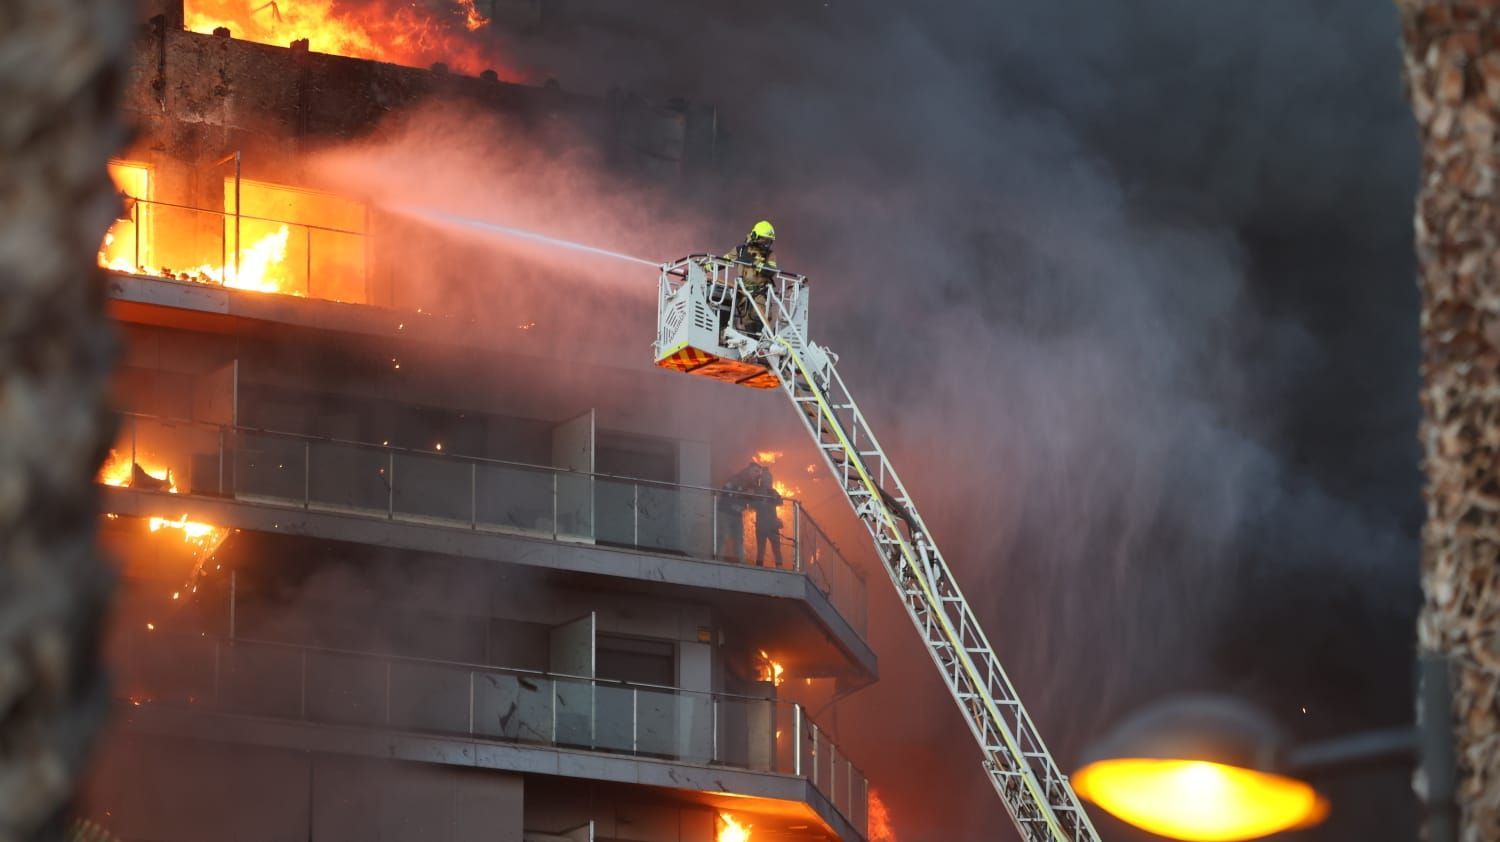 Galería | Dramático incendio en un edificio de València